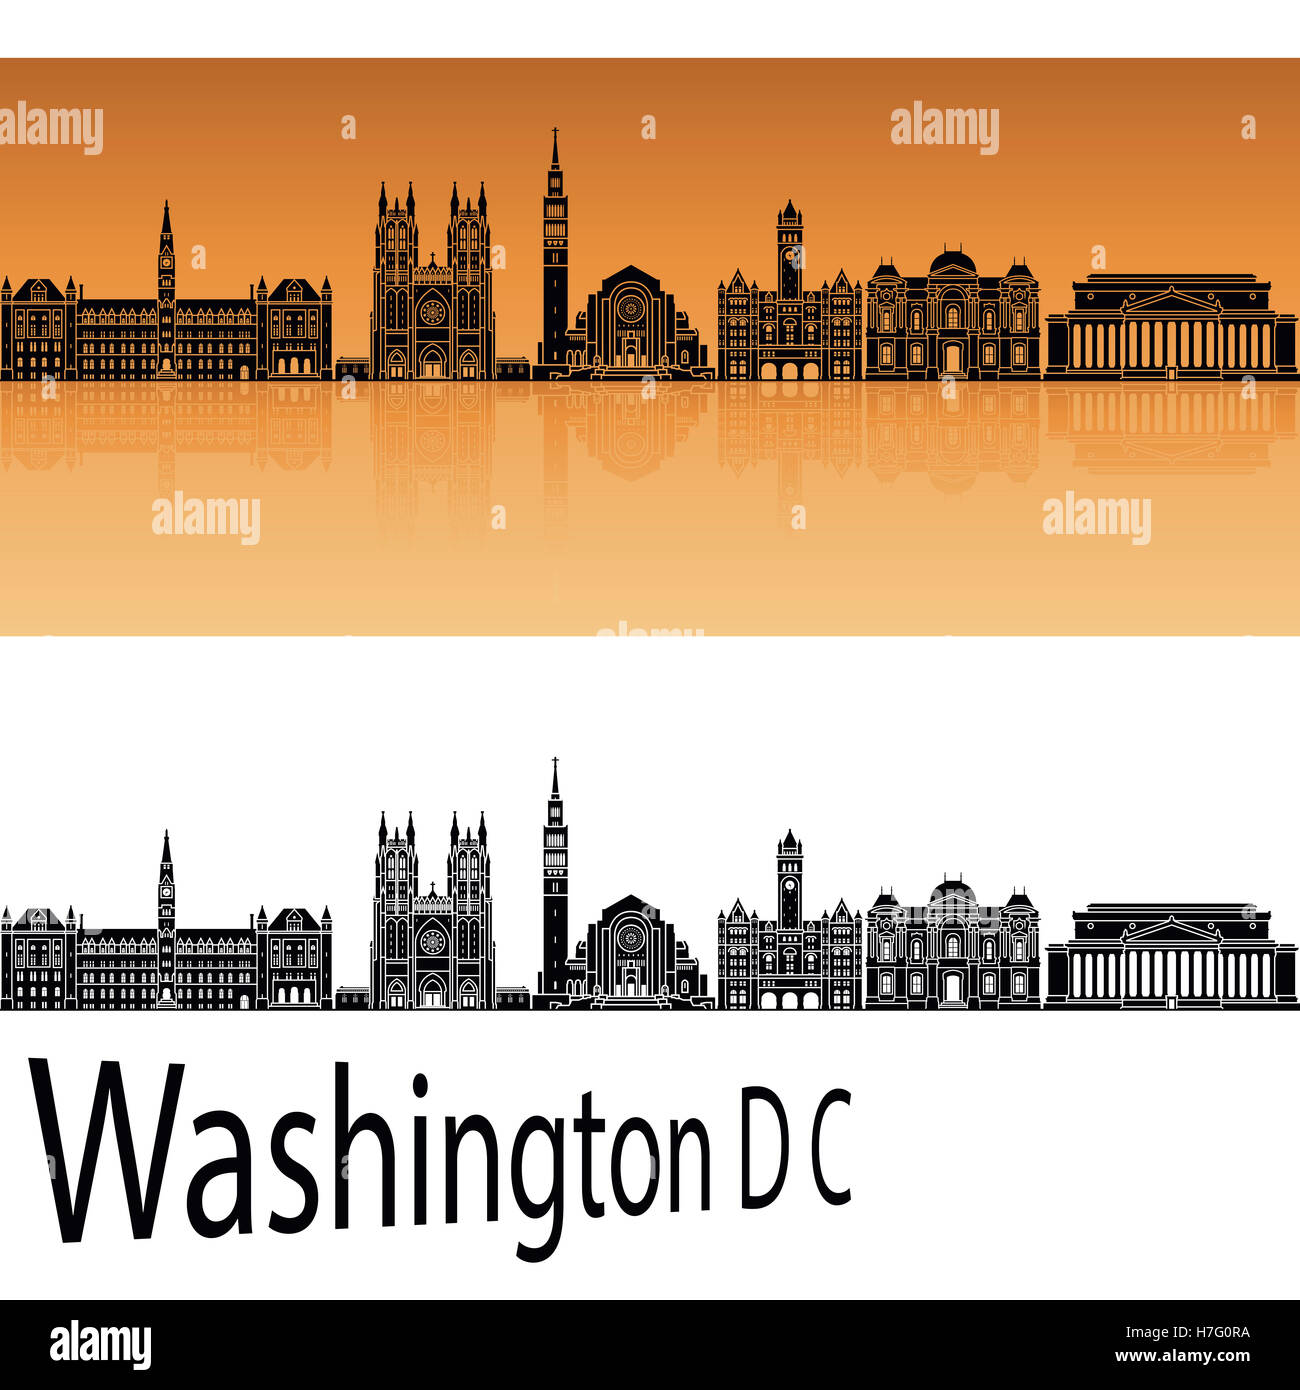 Washington DC V2 skyline in orange background in editable vector file Stock Photo